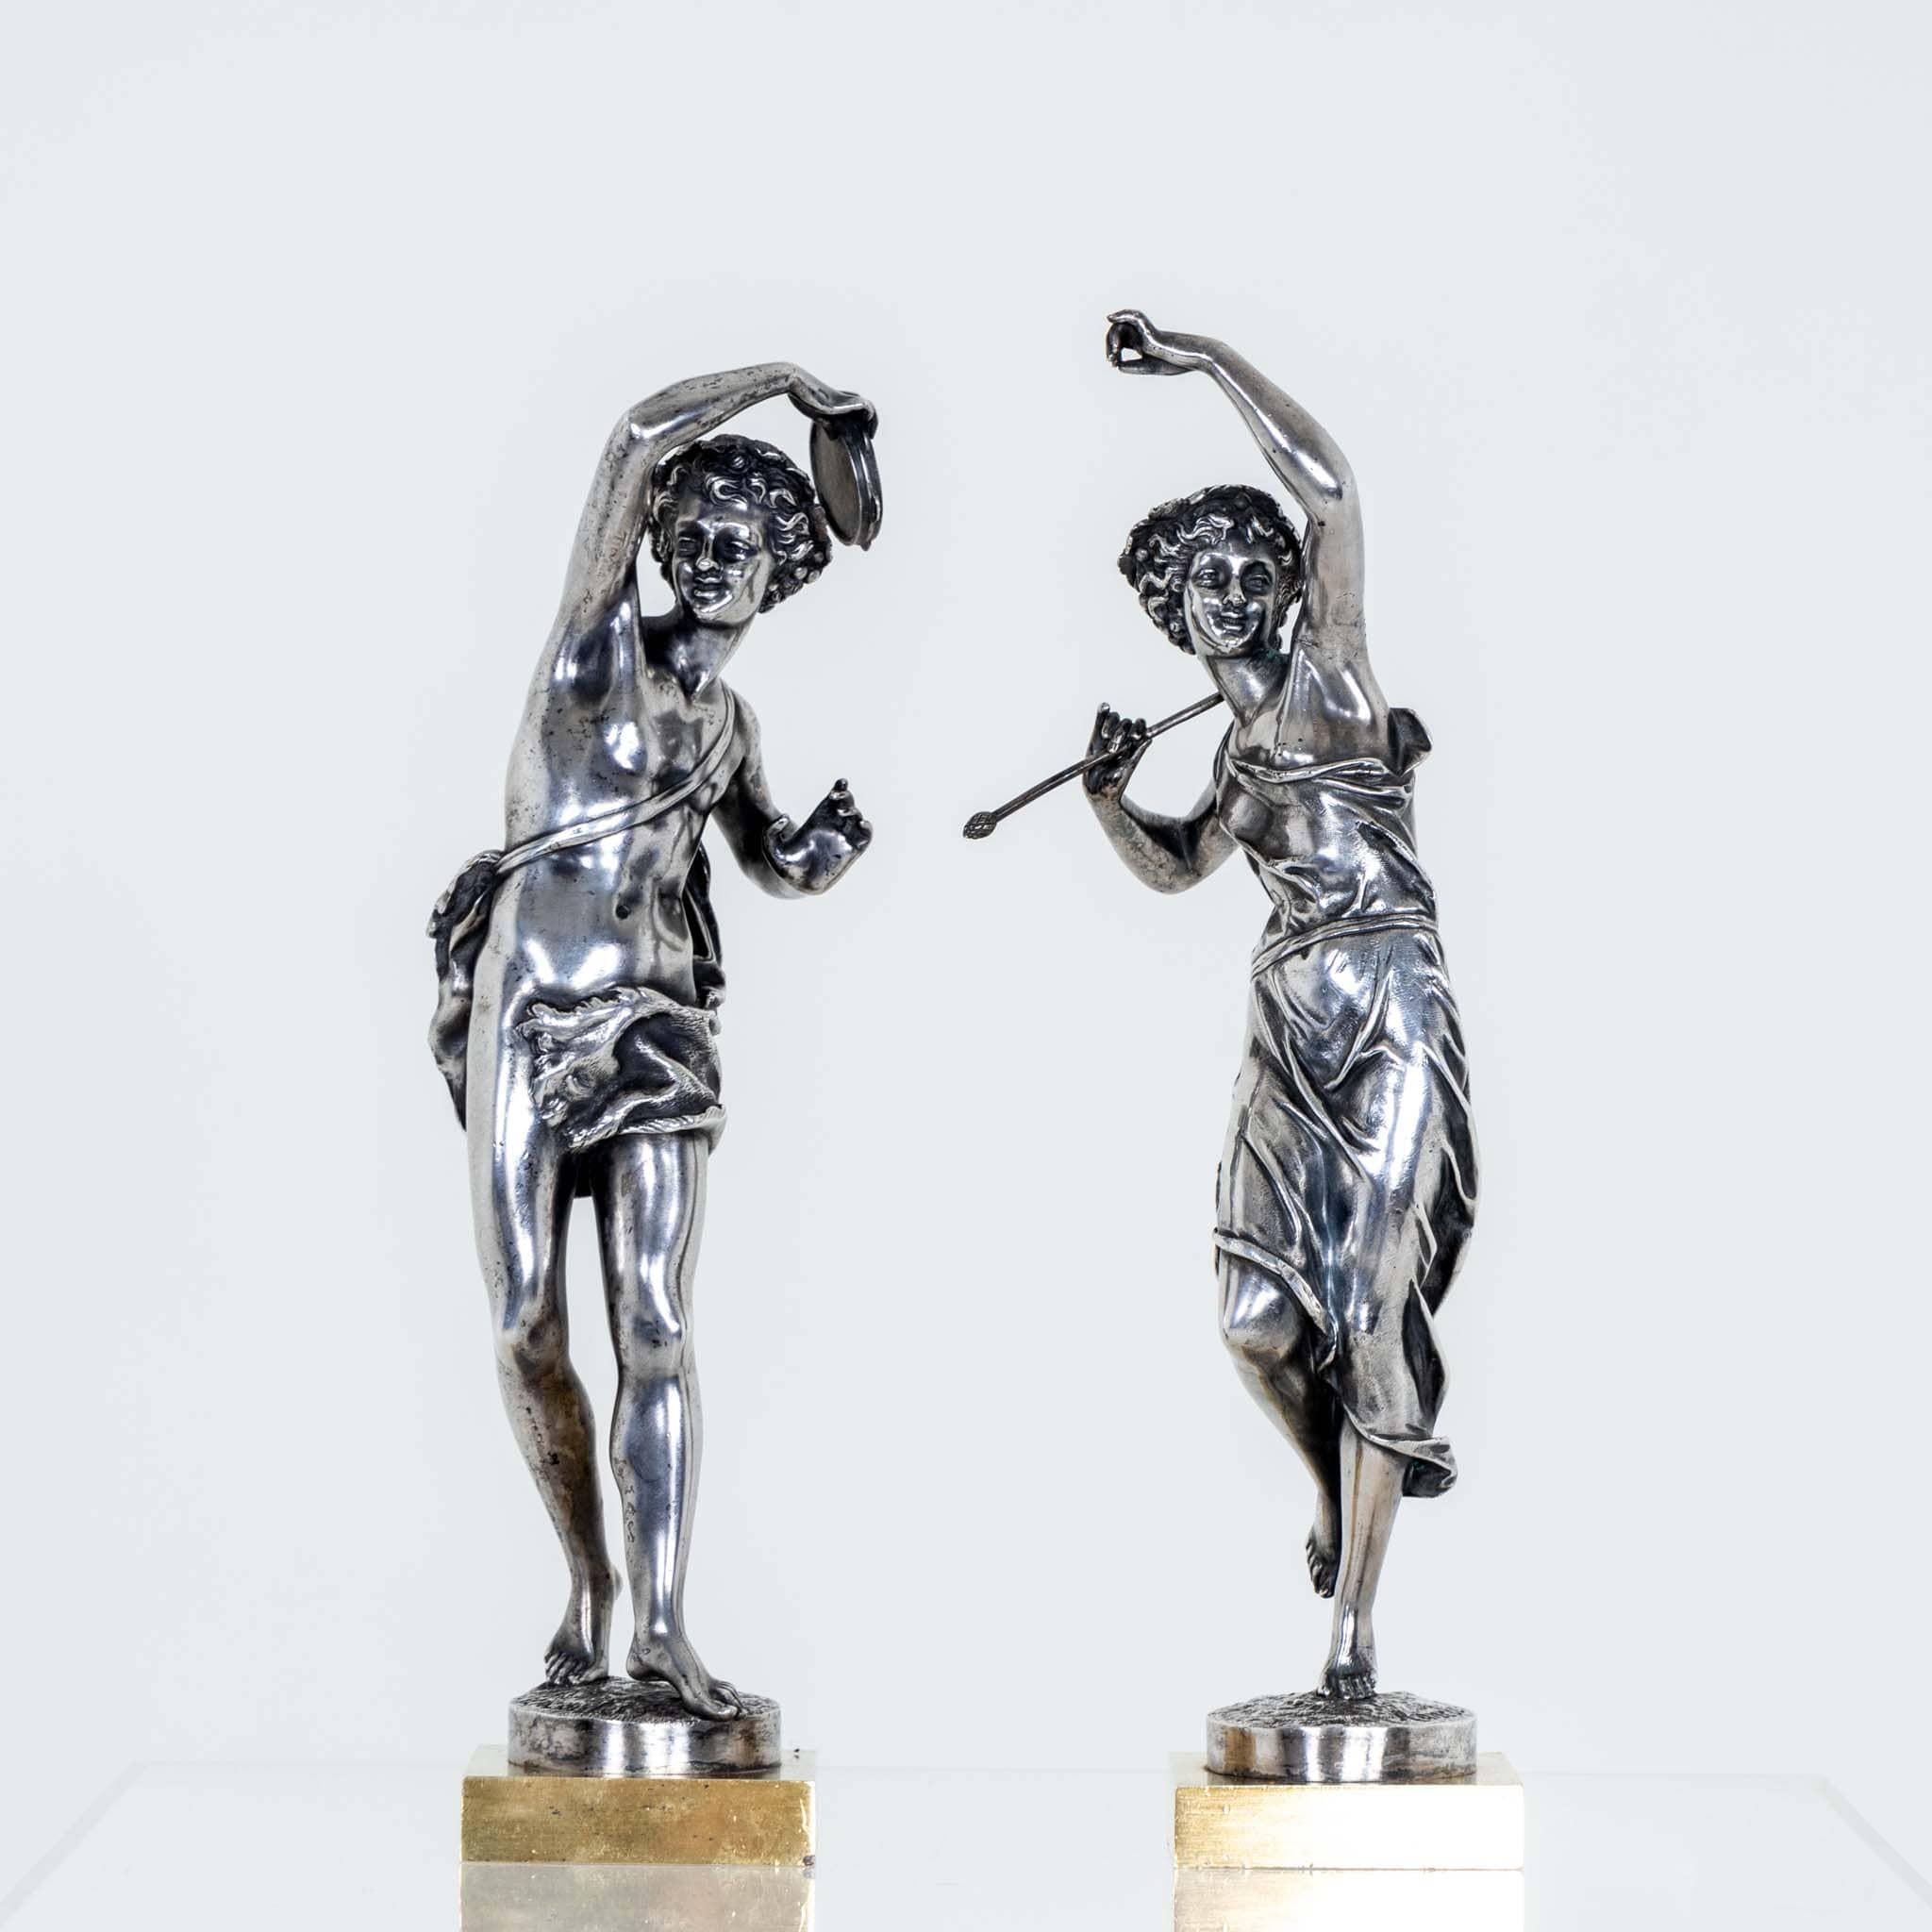 Paire de figurines en bronze argenté en forme de bacchantes dansantes avec des feuilles de vigne dans les cheveux. La danseuse tient un bâton, le danseur un tambourin. Estampillé au pied. Dimensions de la danseuse : 34,5 x 10 x 14 cm ; danseur : 33